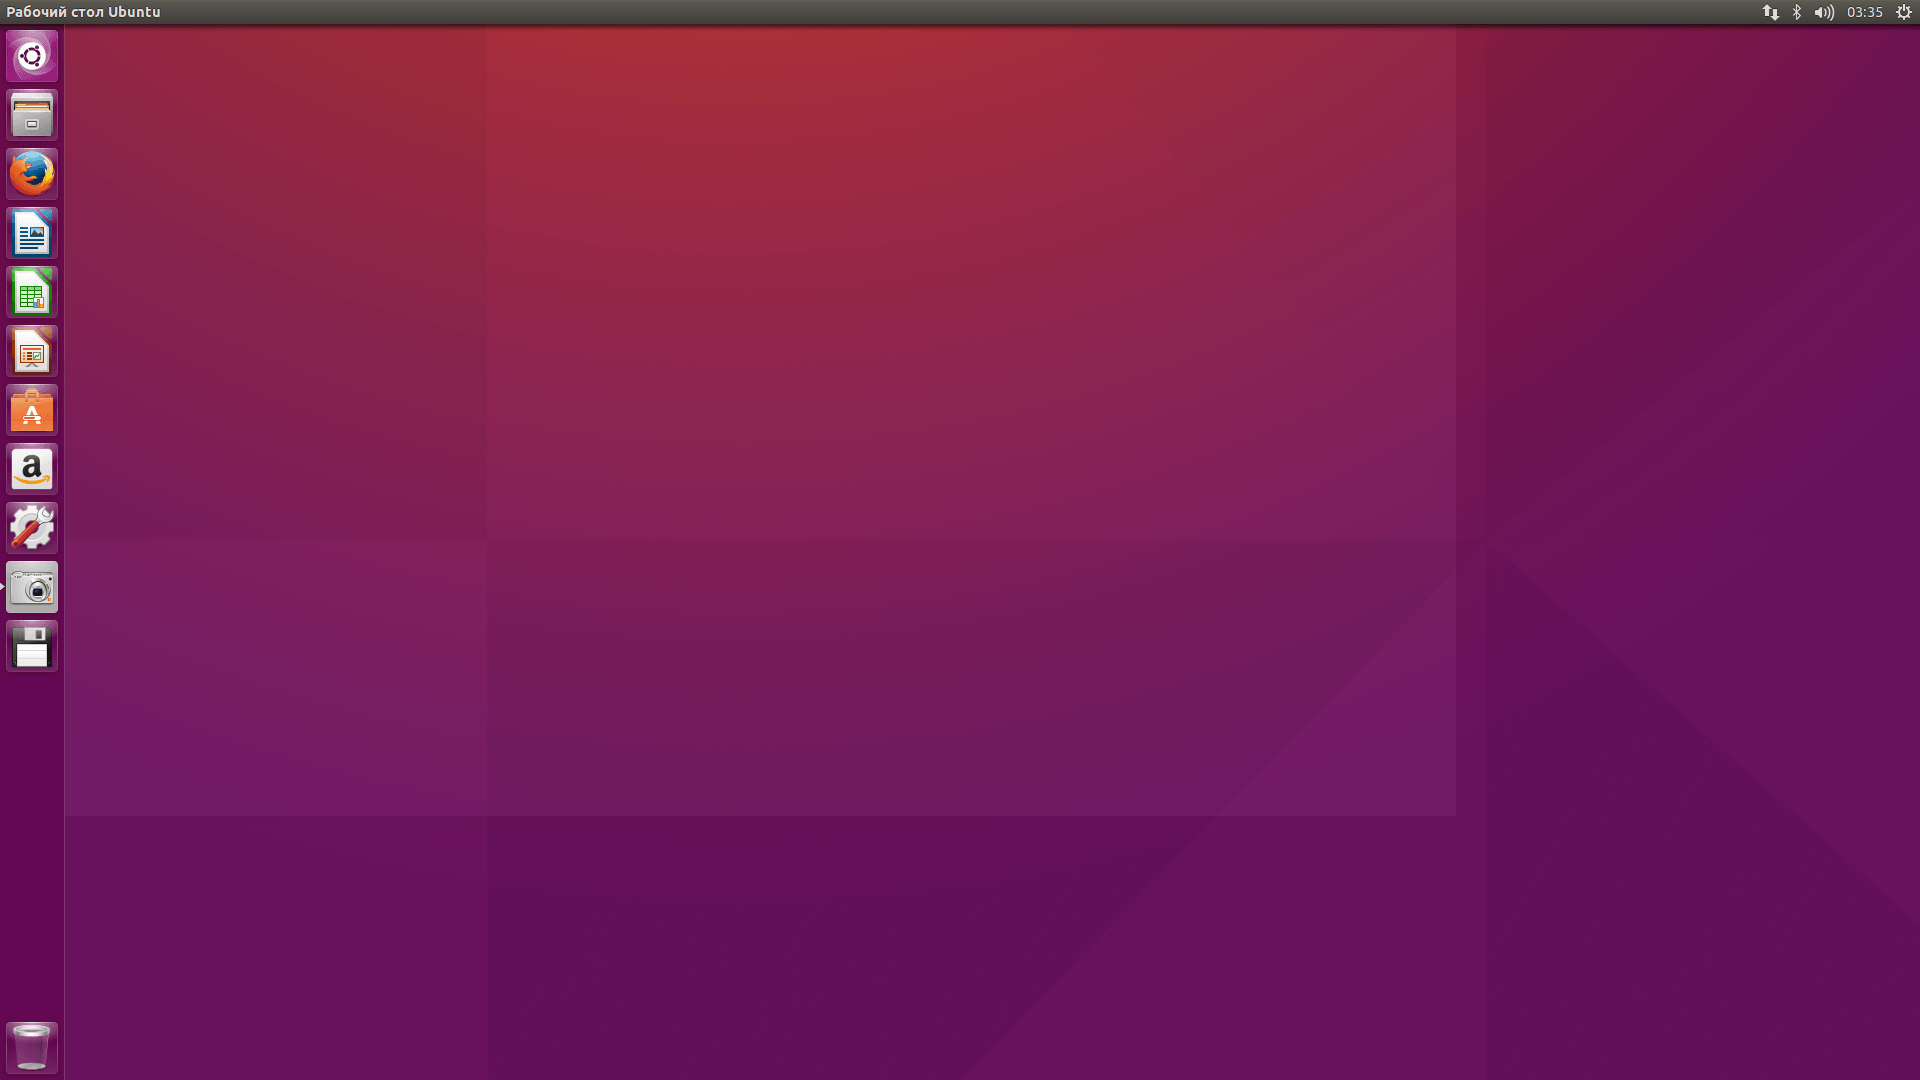 2023 10 16. Ubuntu рабочий стол. Linux Ubuntu рабочий стол. Ubuntu Server рабочий стол. Рабочий стол убунту 20.04.